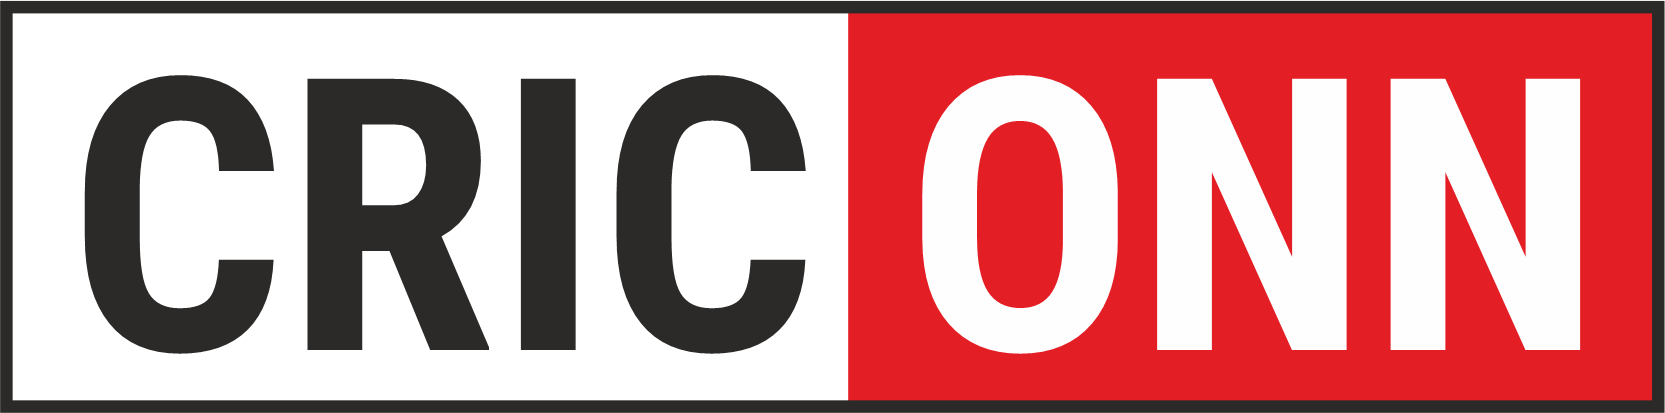 criconn logo